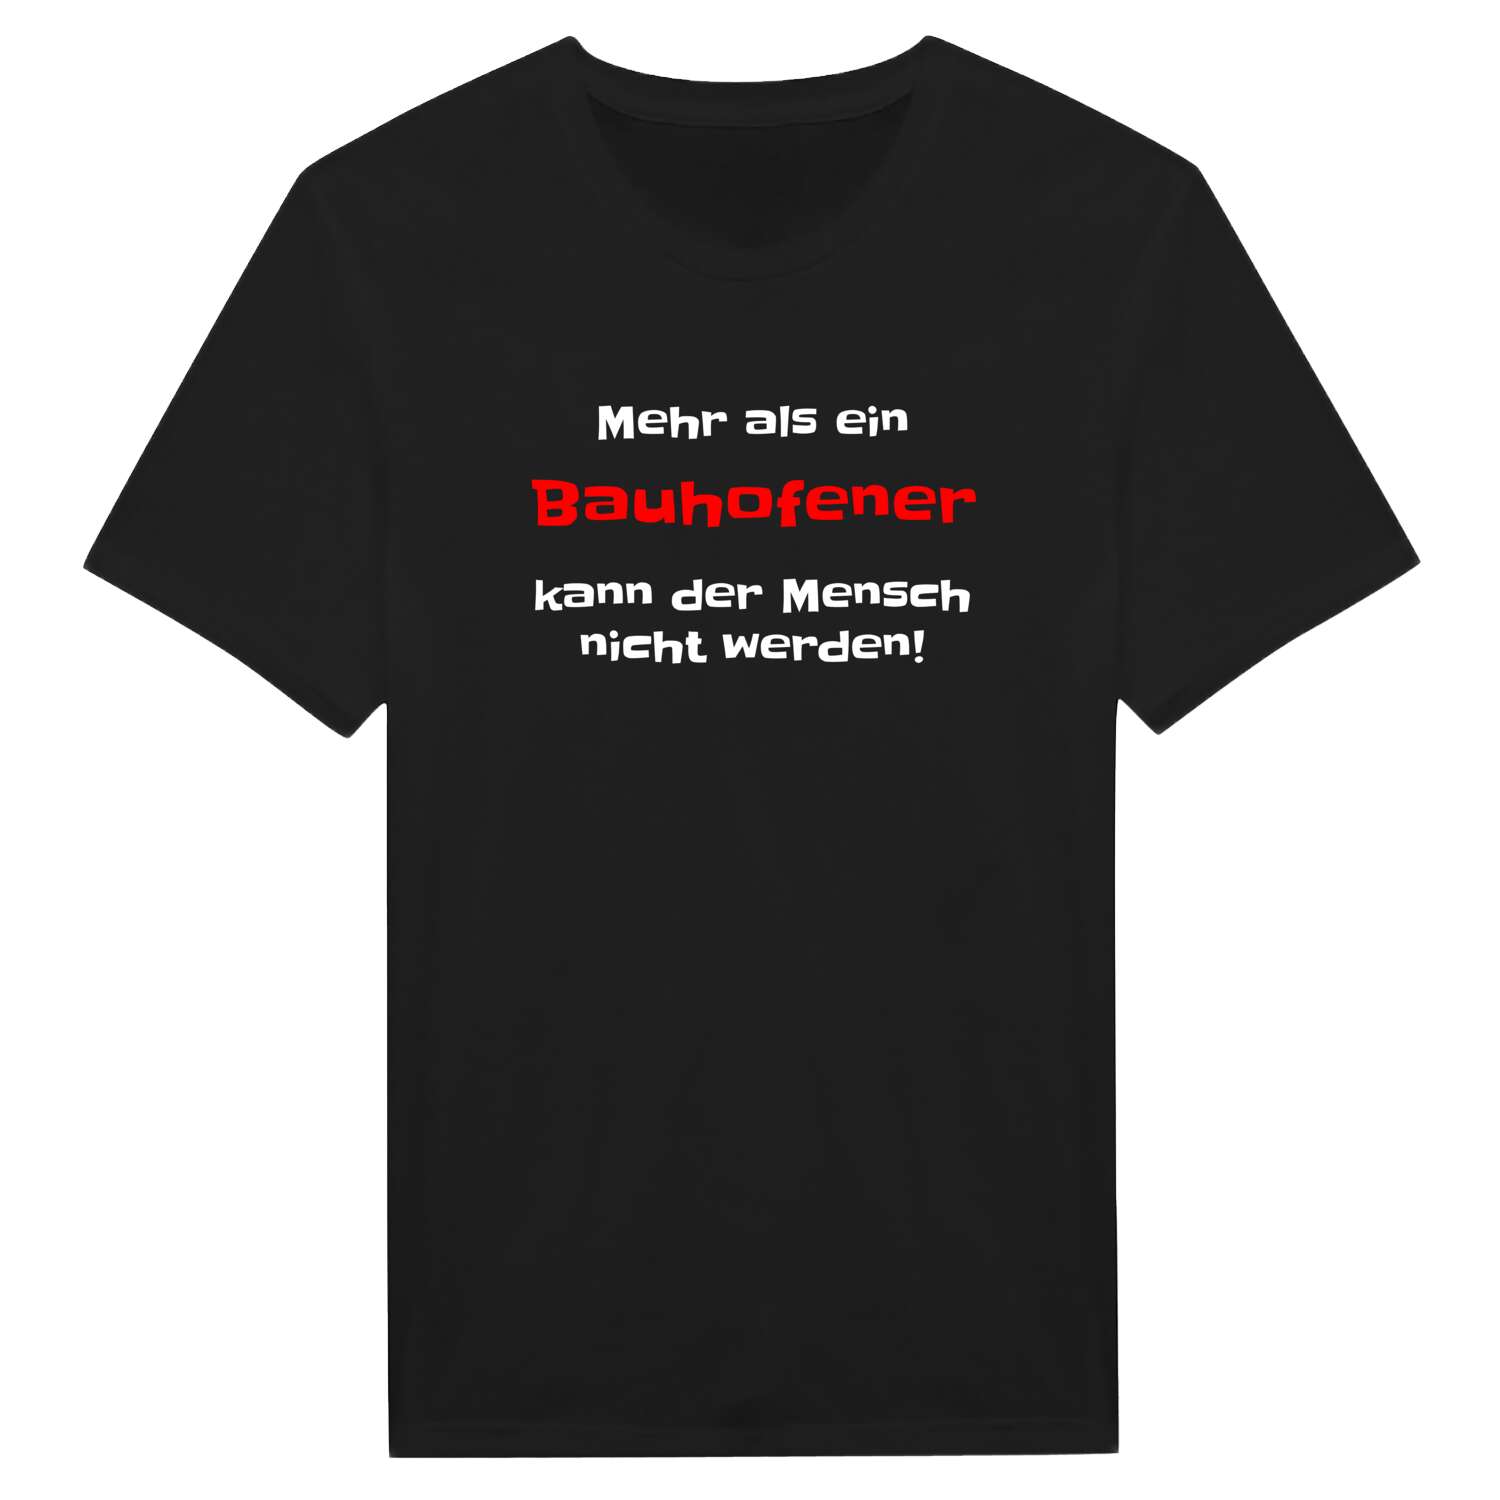 Bauhofen T-Shirt »Mehr als ein«